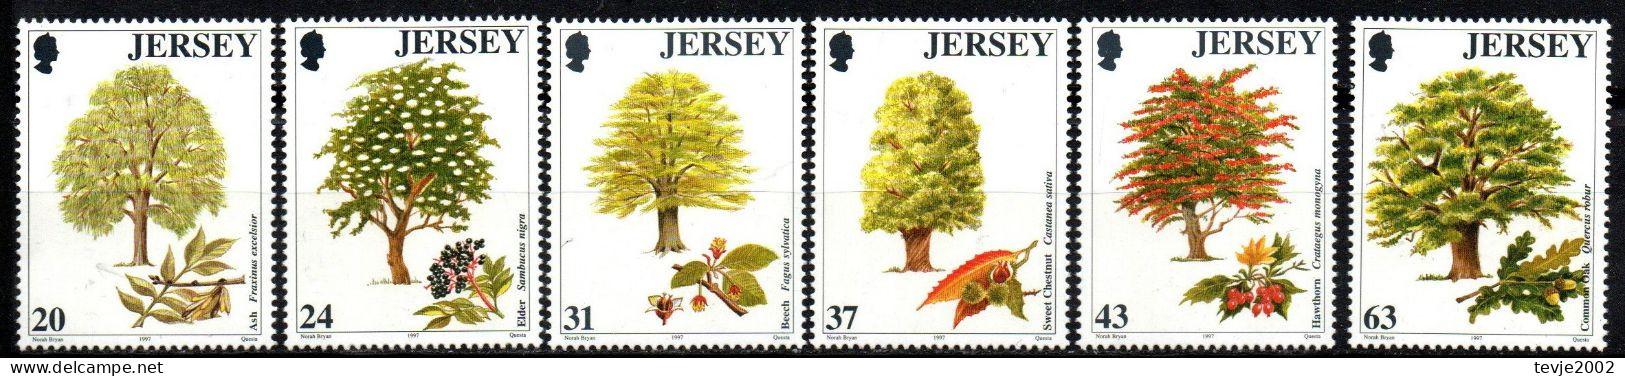 Jersey 1997 - Mi.Nr. 793 - 798 - Postfrisch MNH - Bäume Trees - Trees